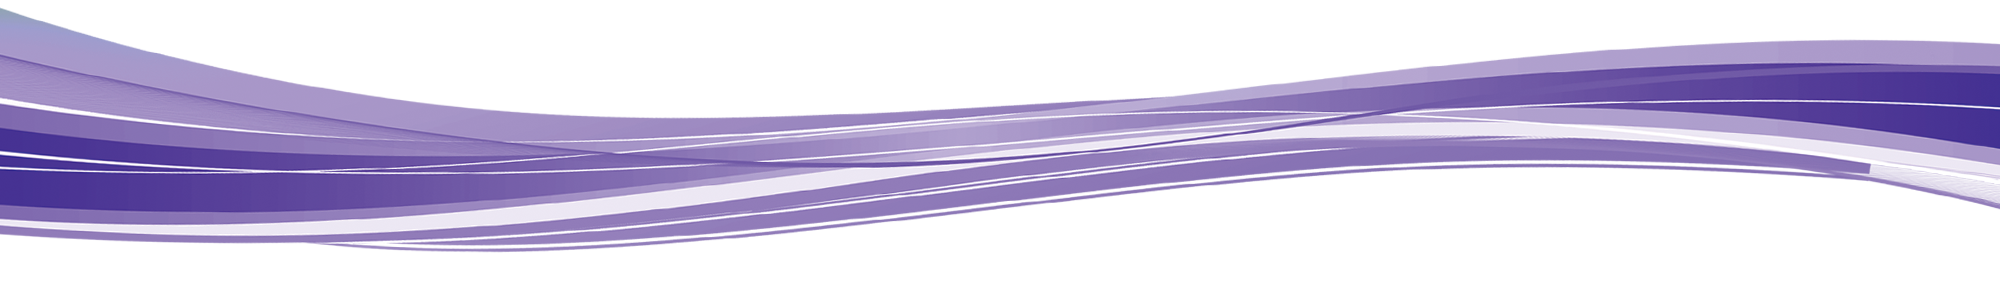 Fondo transparente de onda púrpura